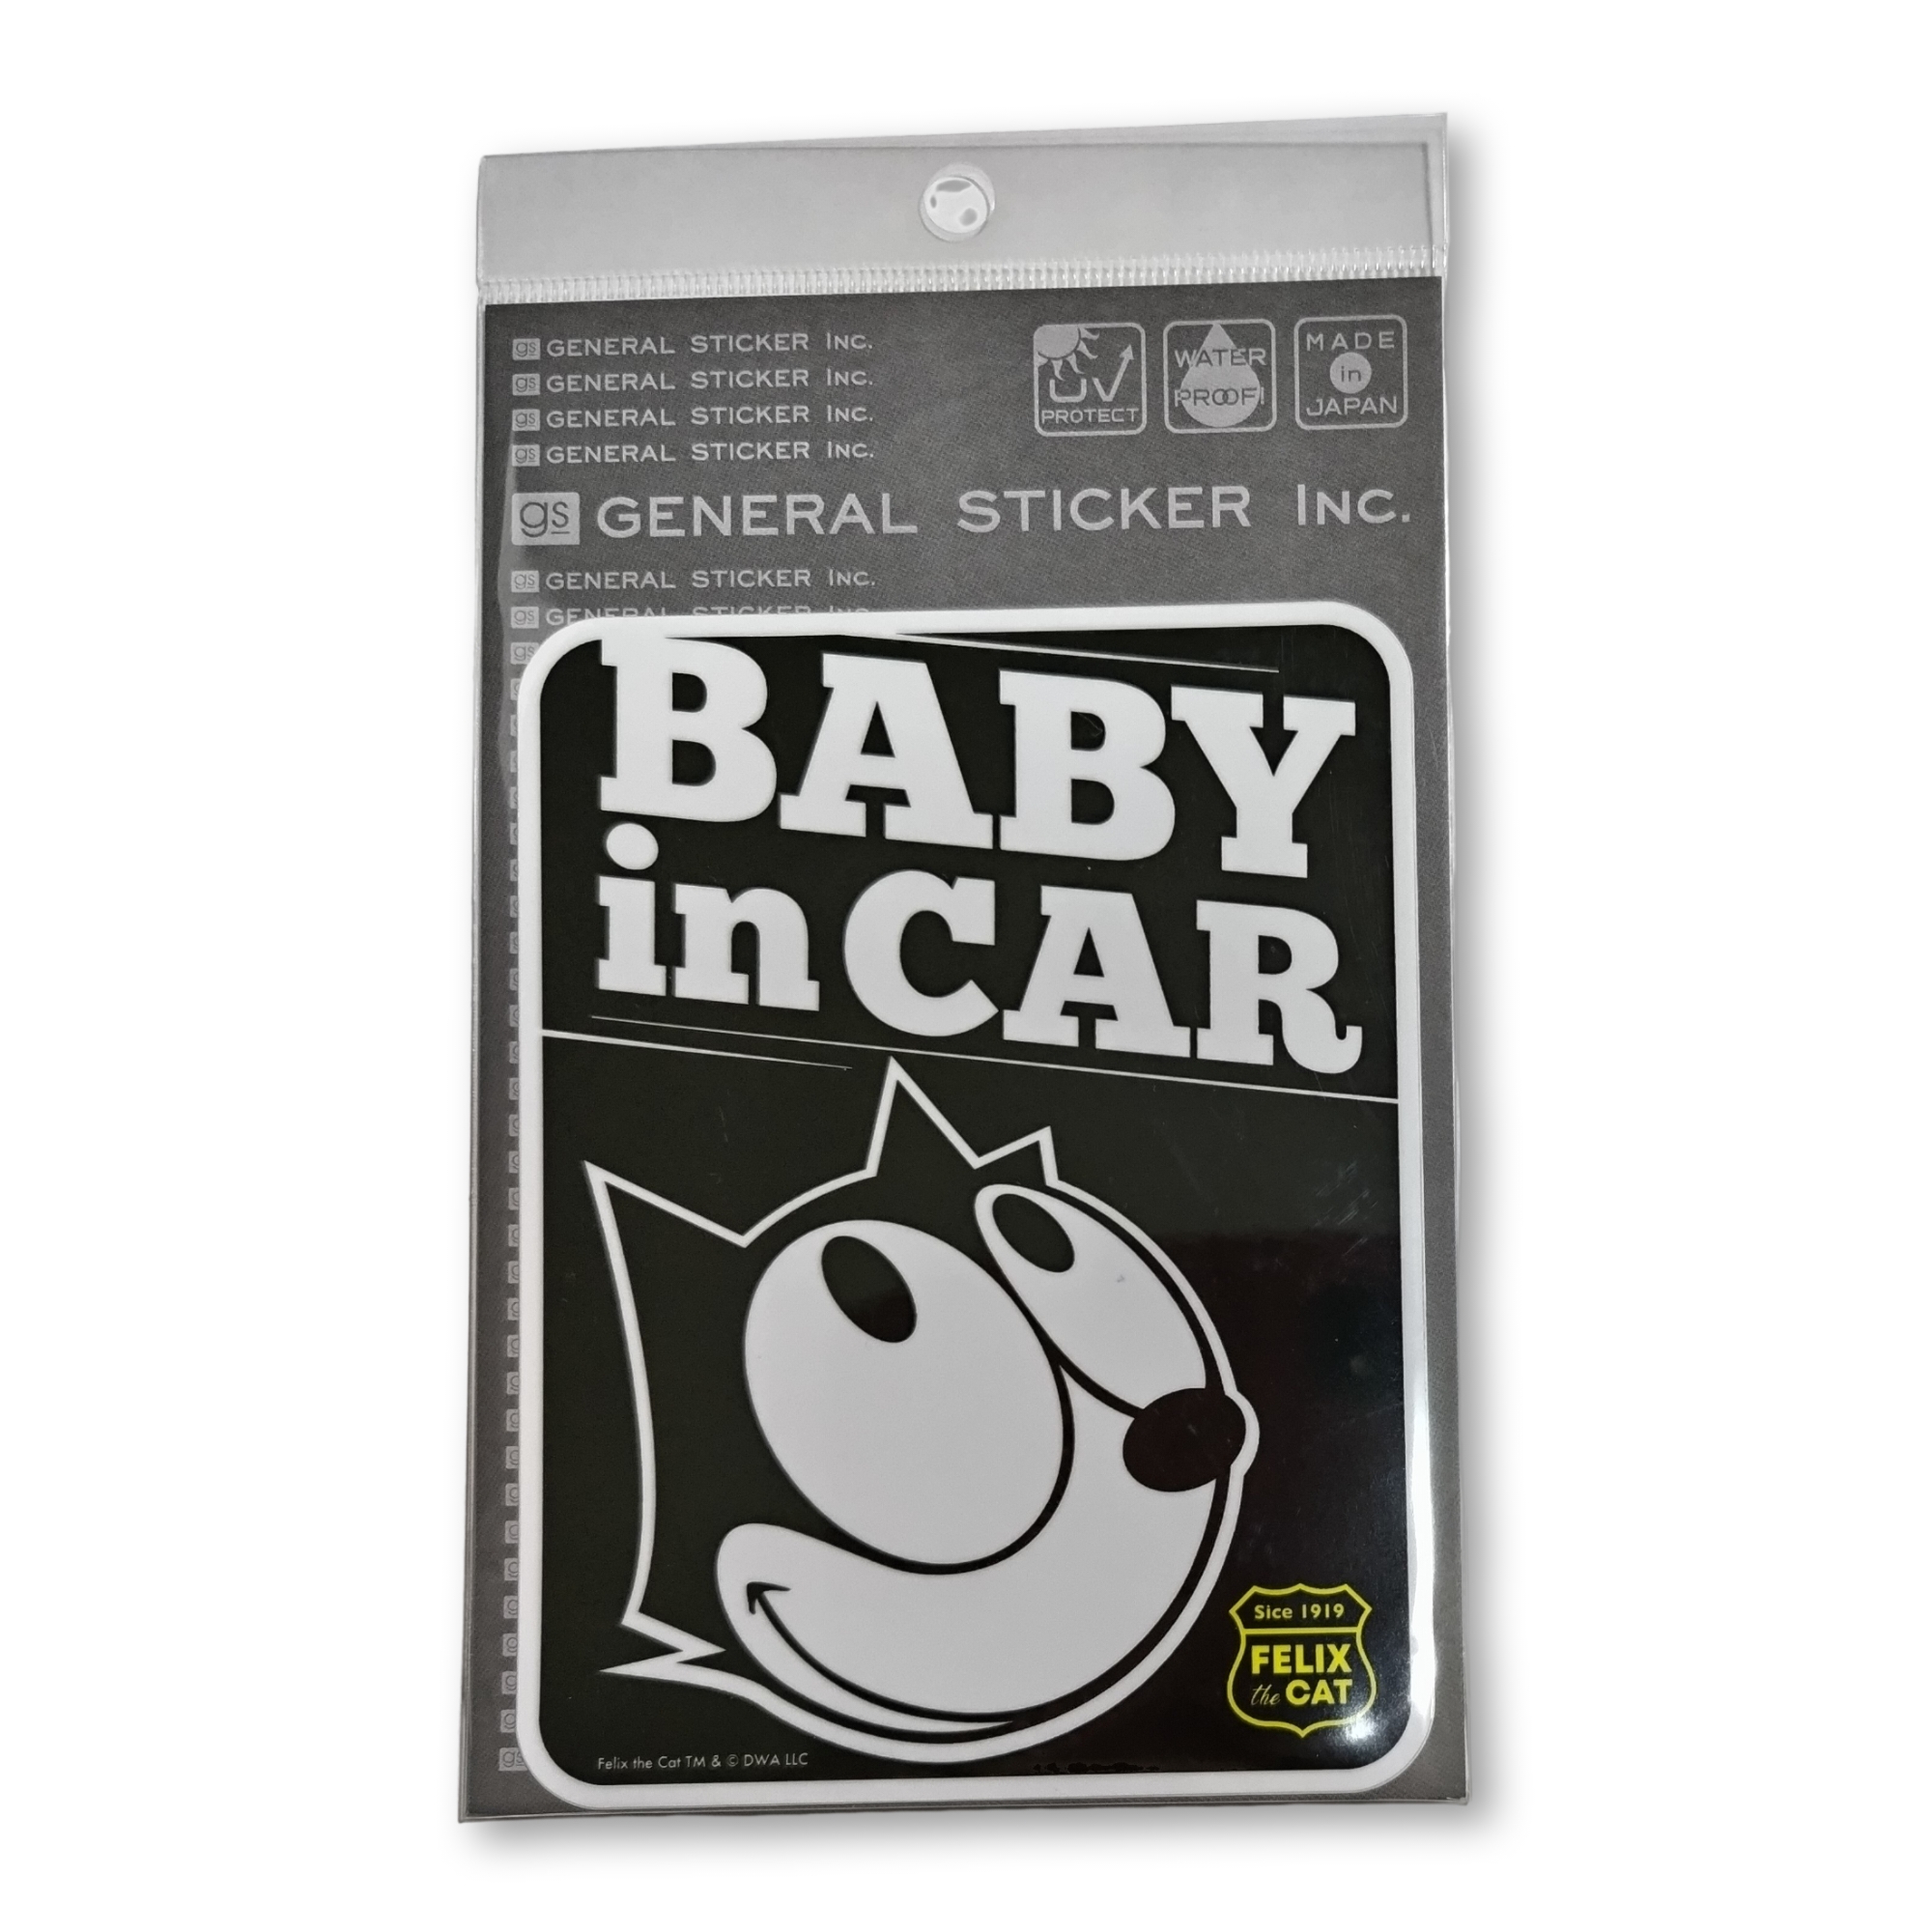 FELIX 車用ステッカー フィリックス・ザ・キャット 黒猫 Cat baby in car ベビーインカー – ダップスショップ